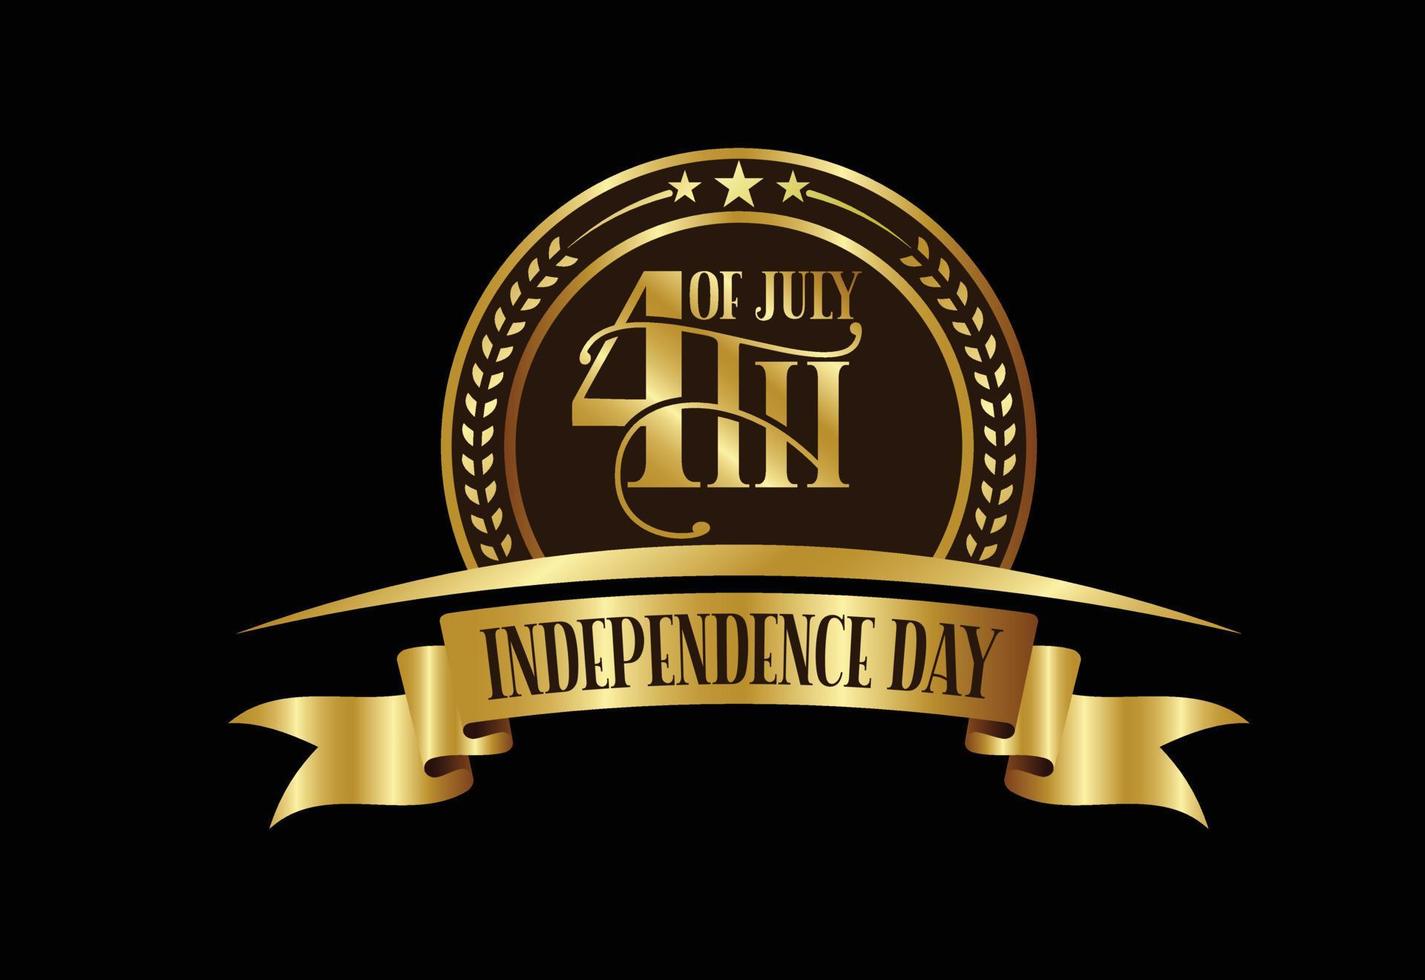 feliz día de la independencia, fiesta nacional del 4 de julio. Ilustración de vector de diseño de texto de letras